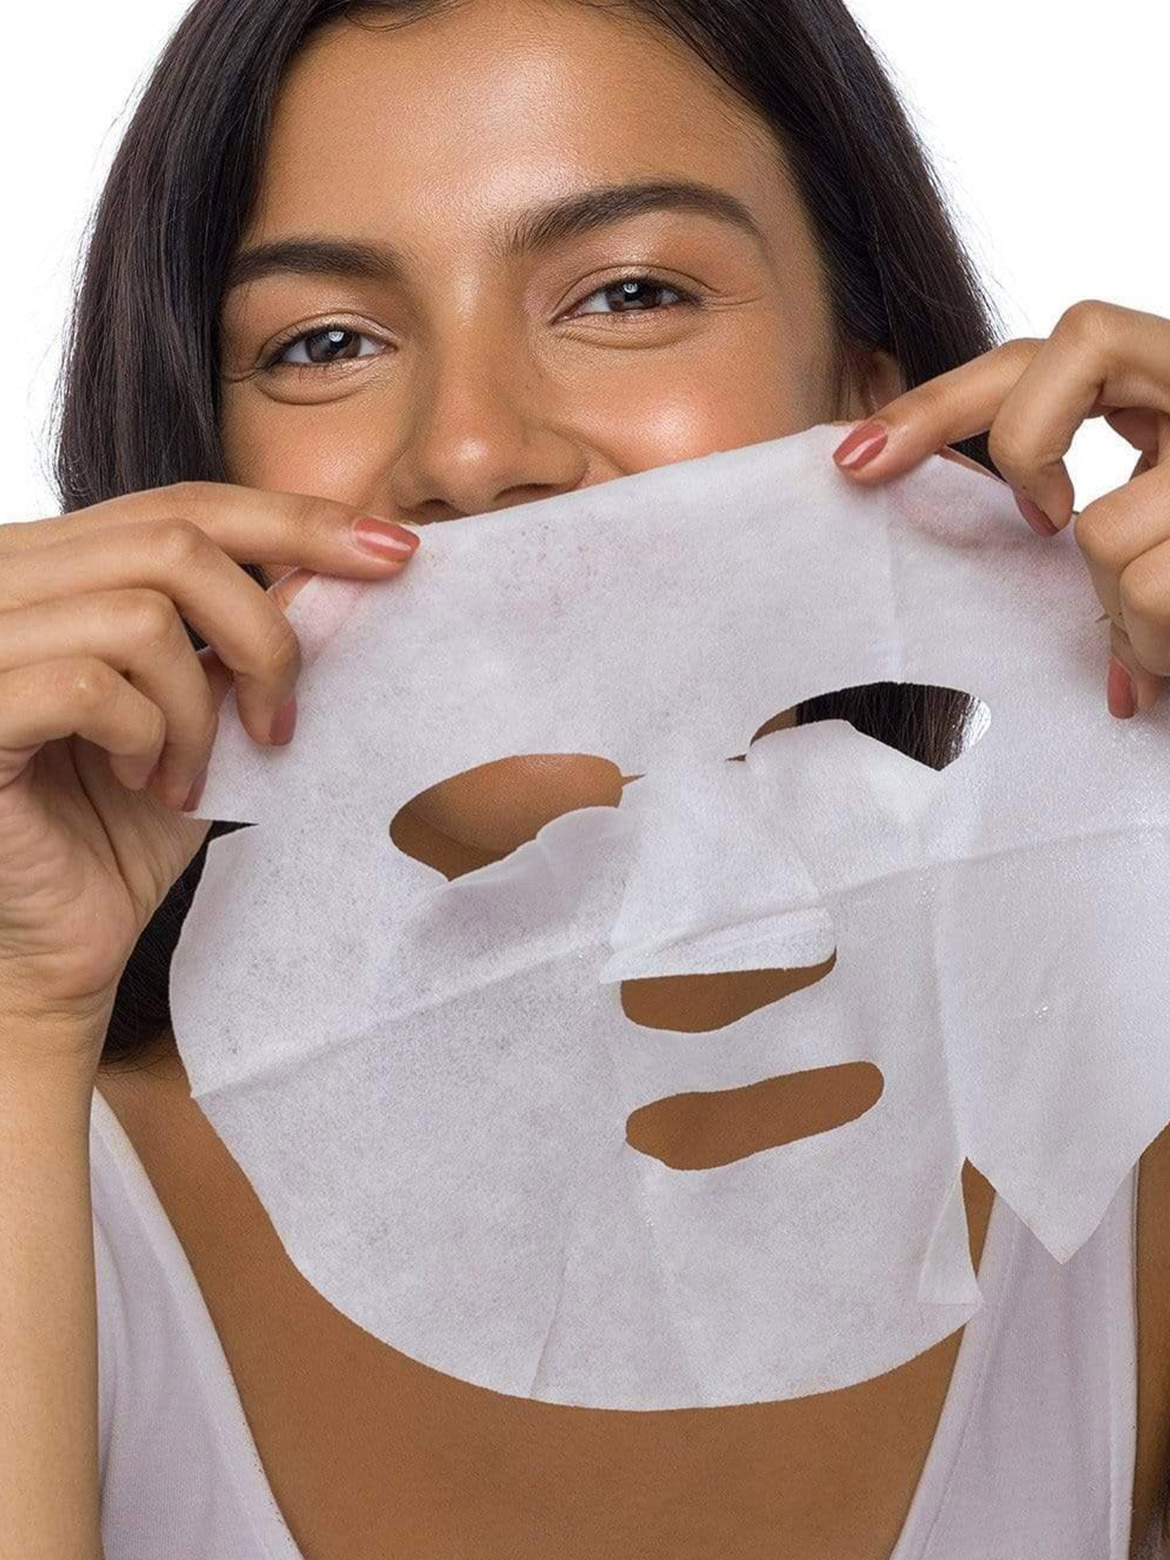 Begrænsninger gået vanvittigt Flad Treat Your Skin To Sheet masks While You WFH | SUGAR Cosmetics